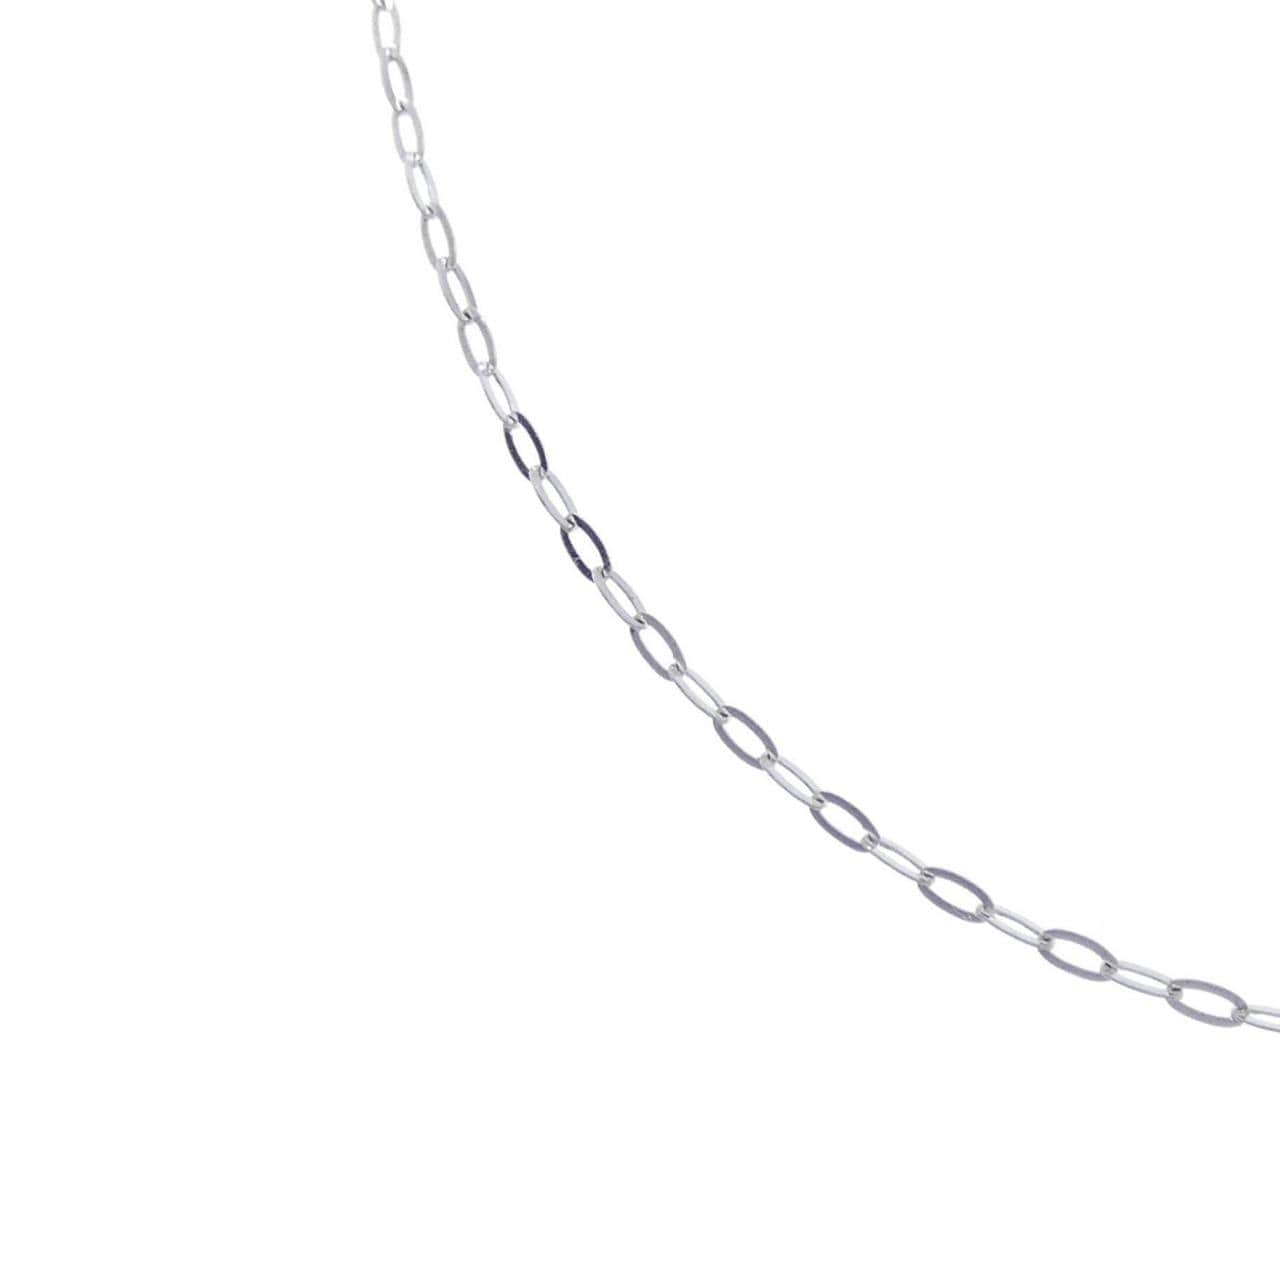 K18WG Azuki chain necklace